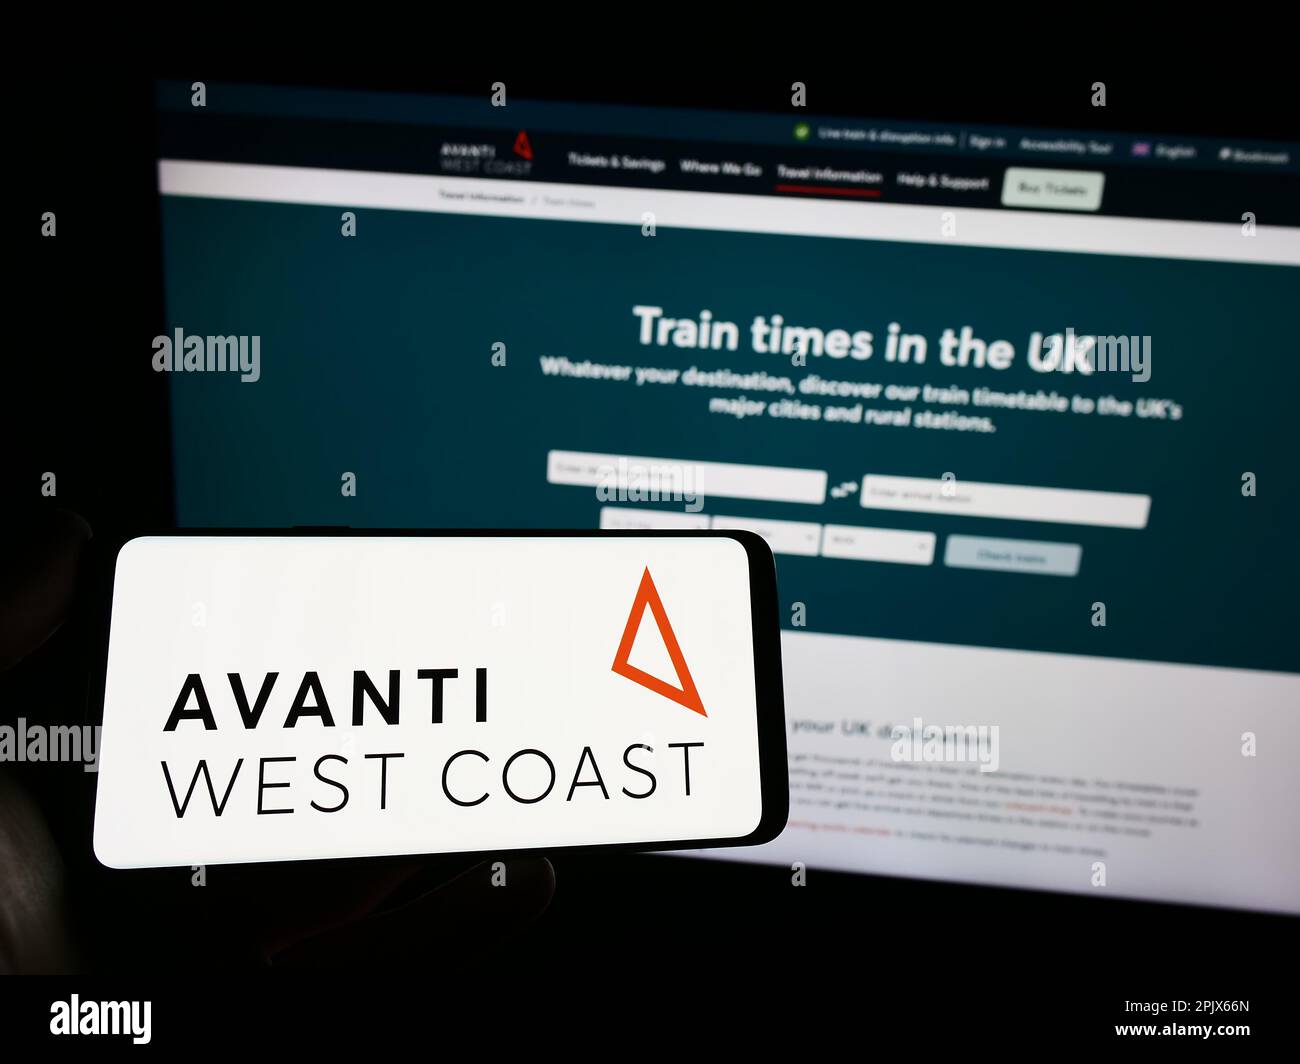 Personne tenant un smartphone avec le logo de la compagnie de train britannique Avanti West Coast sur l'écran devant le site Web. Mise au point sur l'affichage du téléphone. Banque D'Images